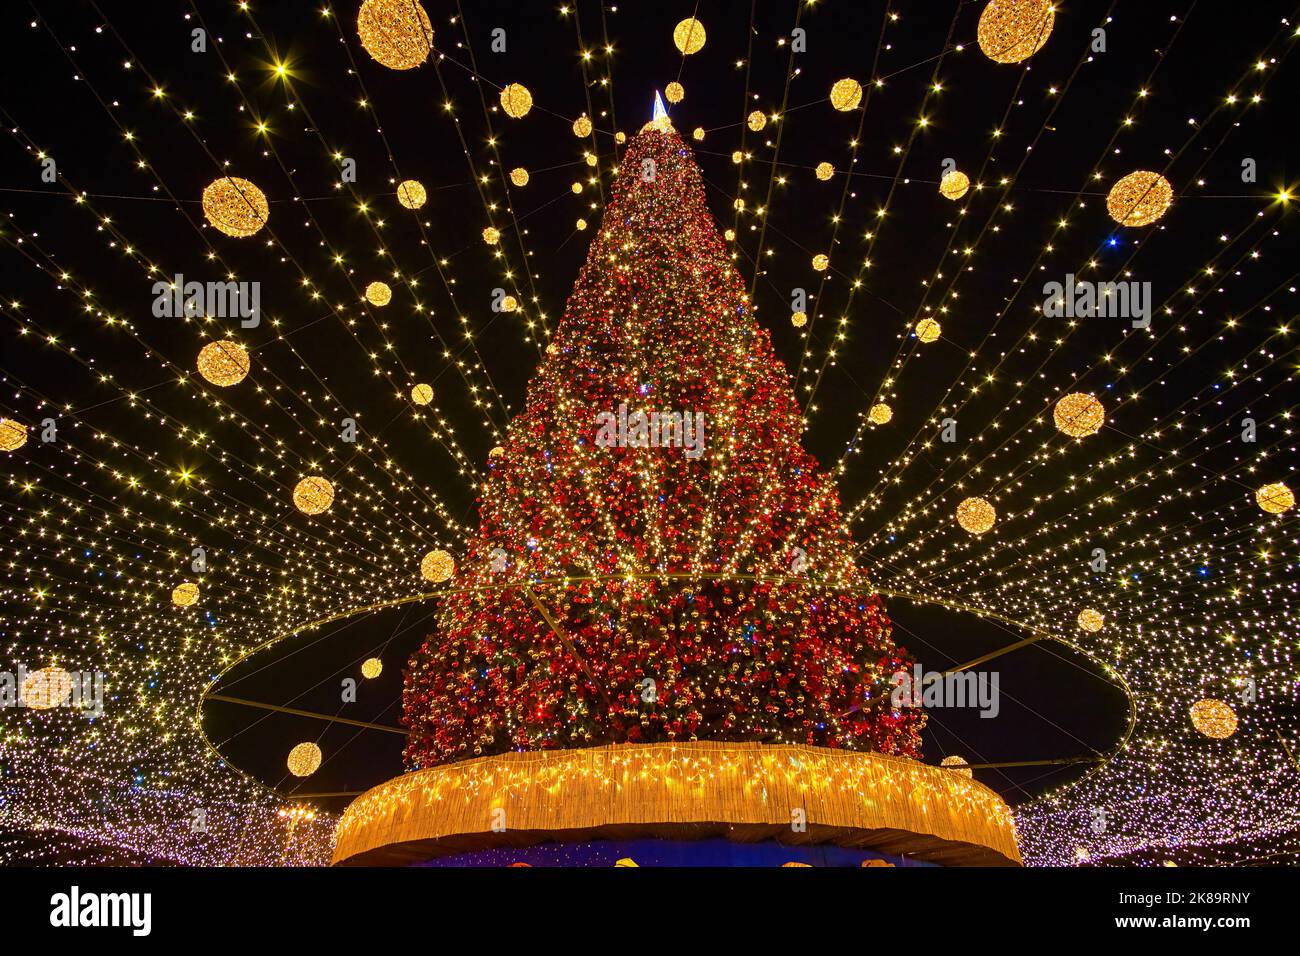 Piazza Santa Sofia è riccamente decorata per la celebrazione di Natale con le luci luminose e le ghirlande colorate sull'albero di Natale, Kyiv, Ucraina Foto Stock